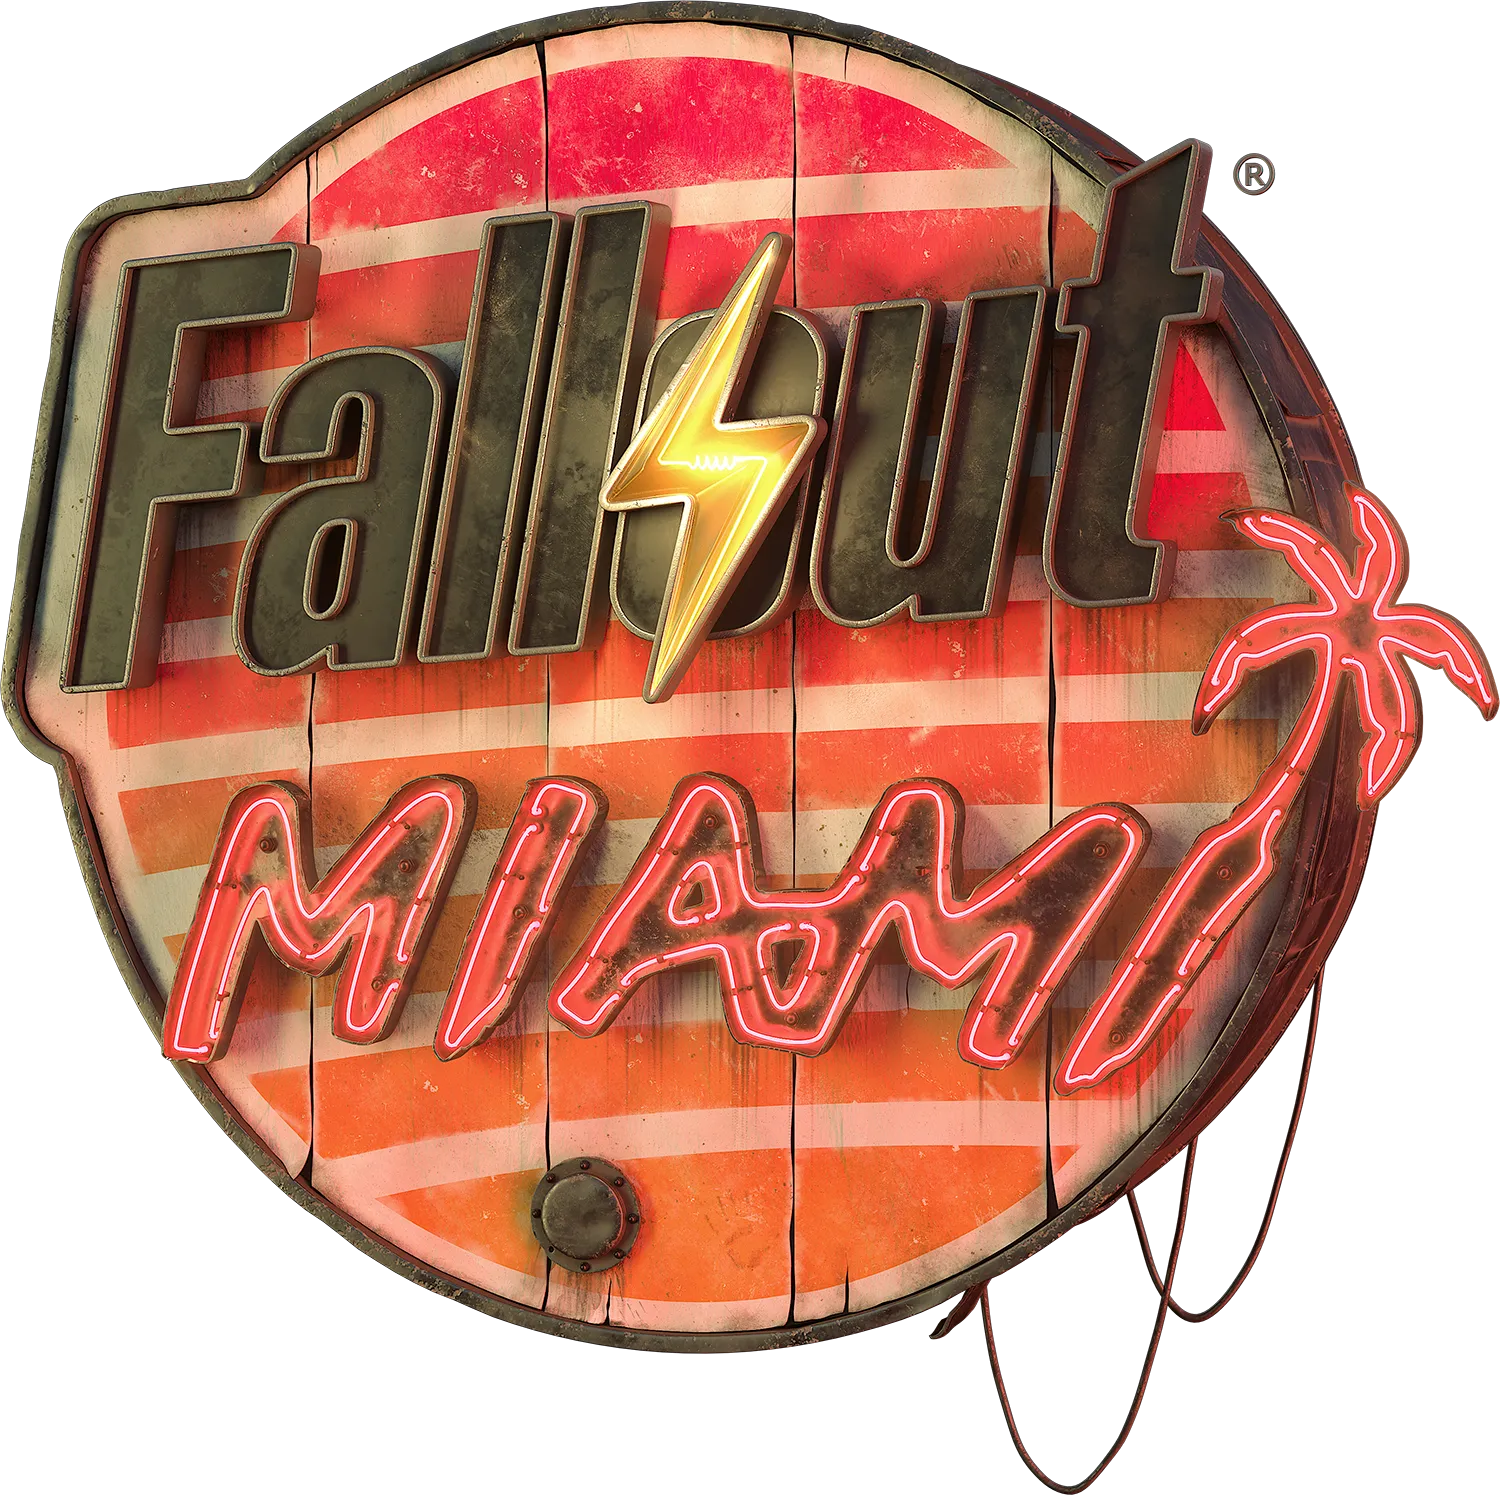 Fallout Miami